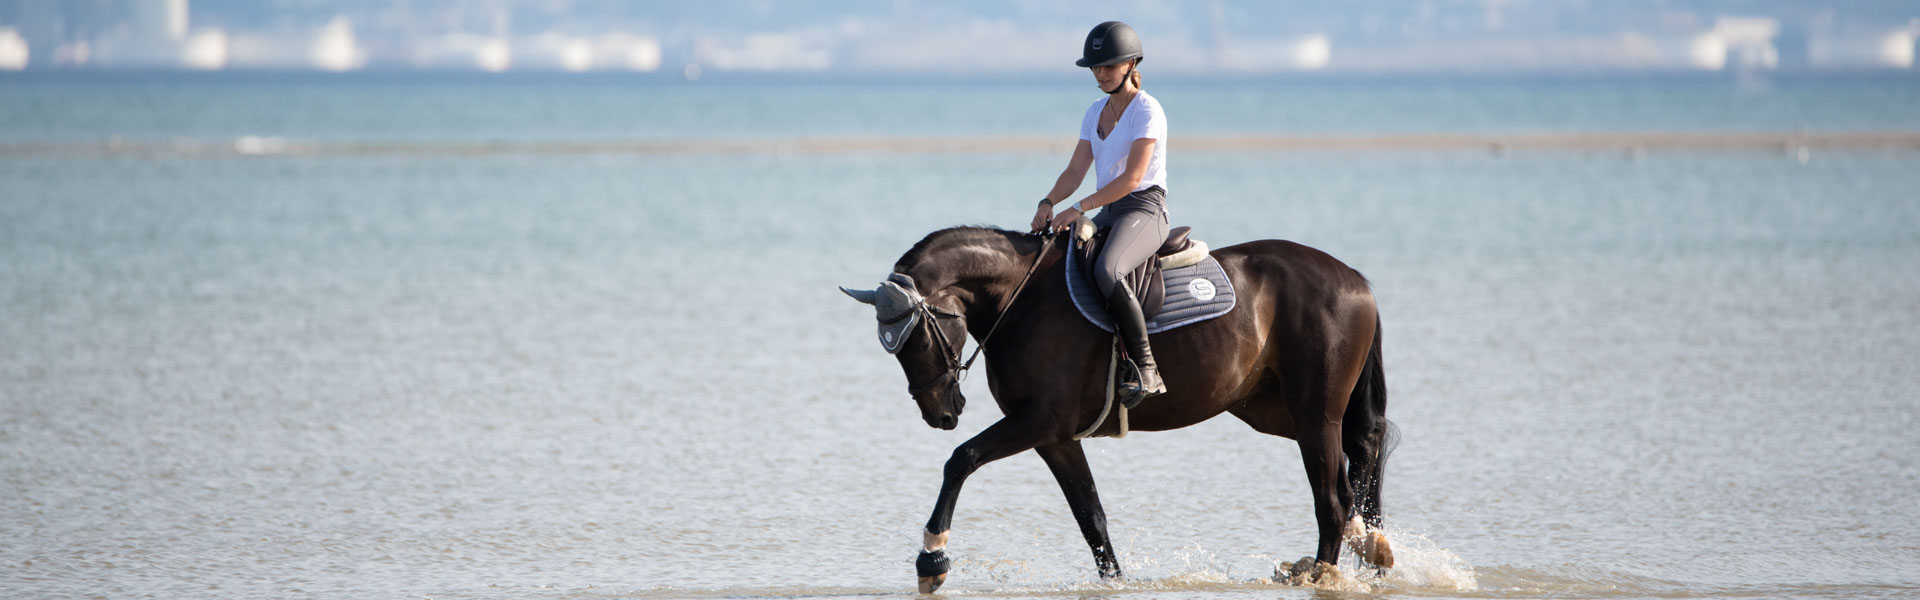 aller à la plage avec son cheval photo eau mer